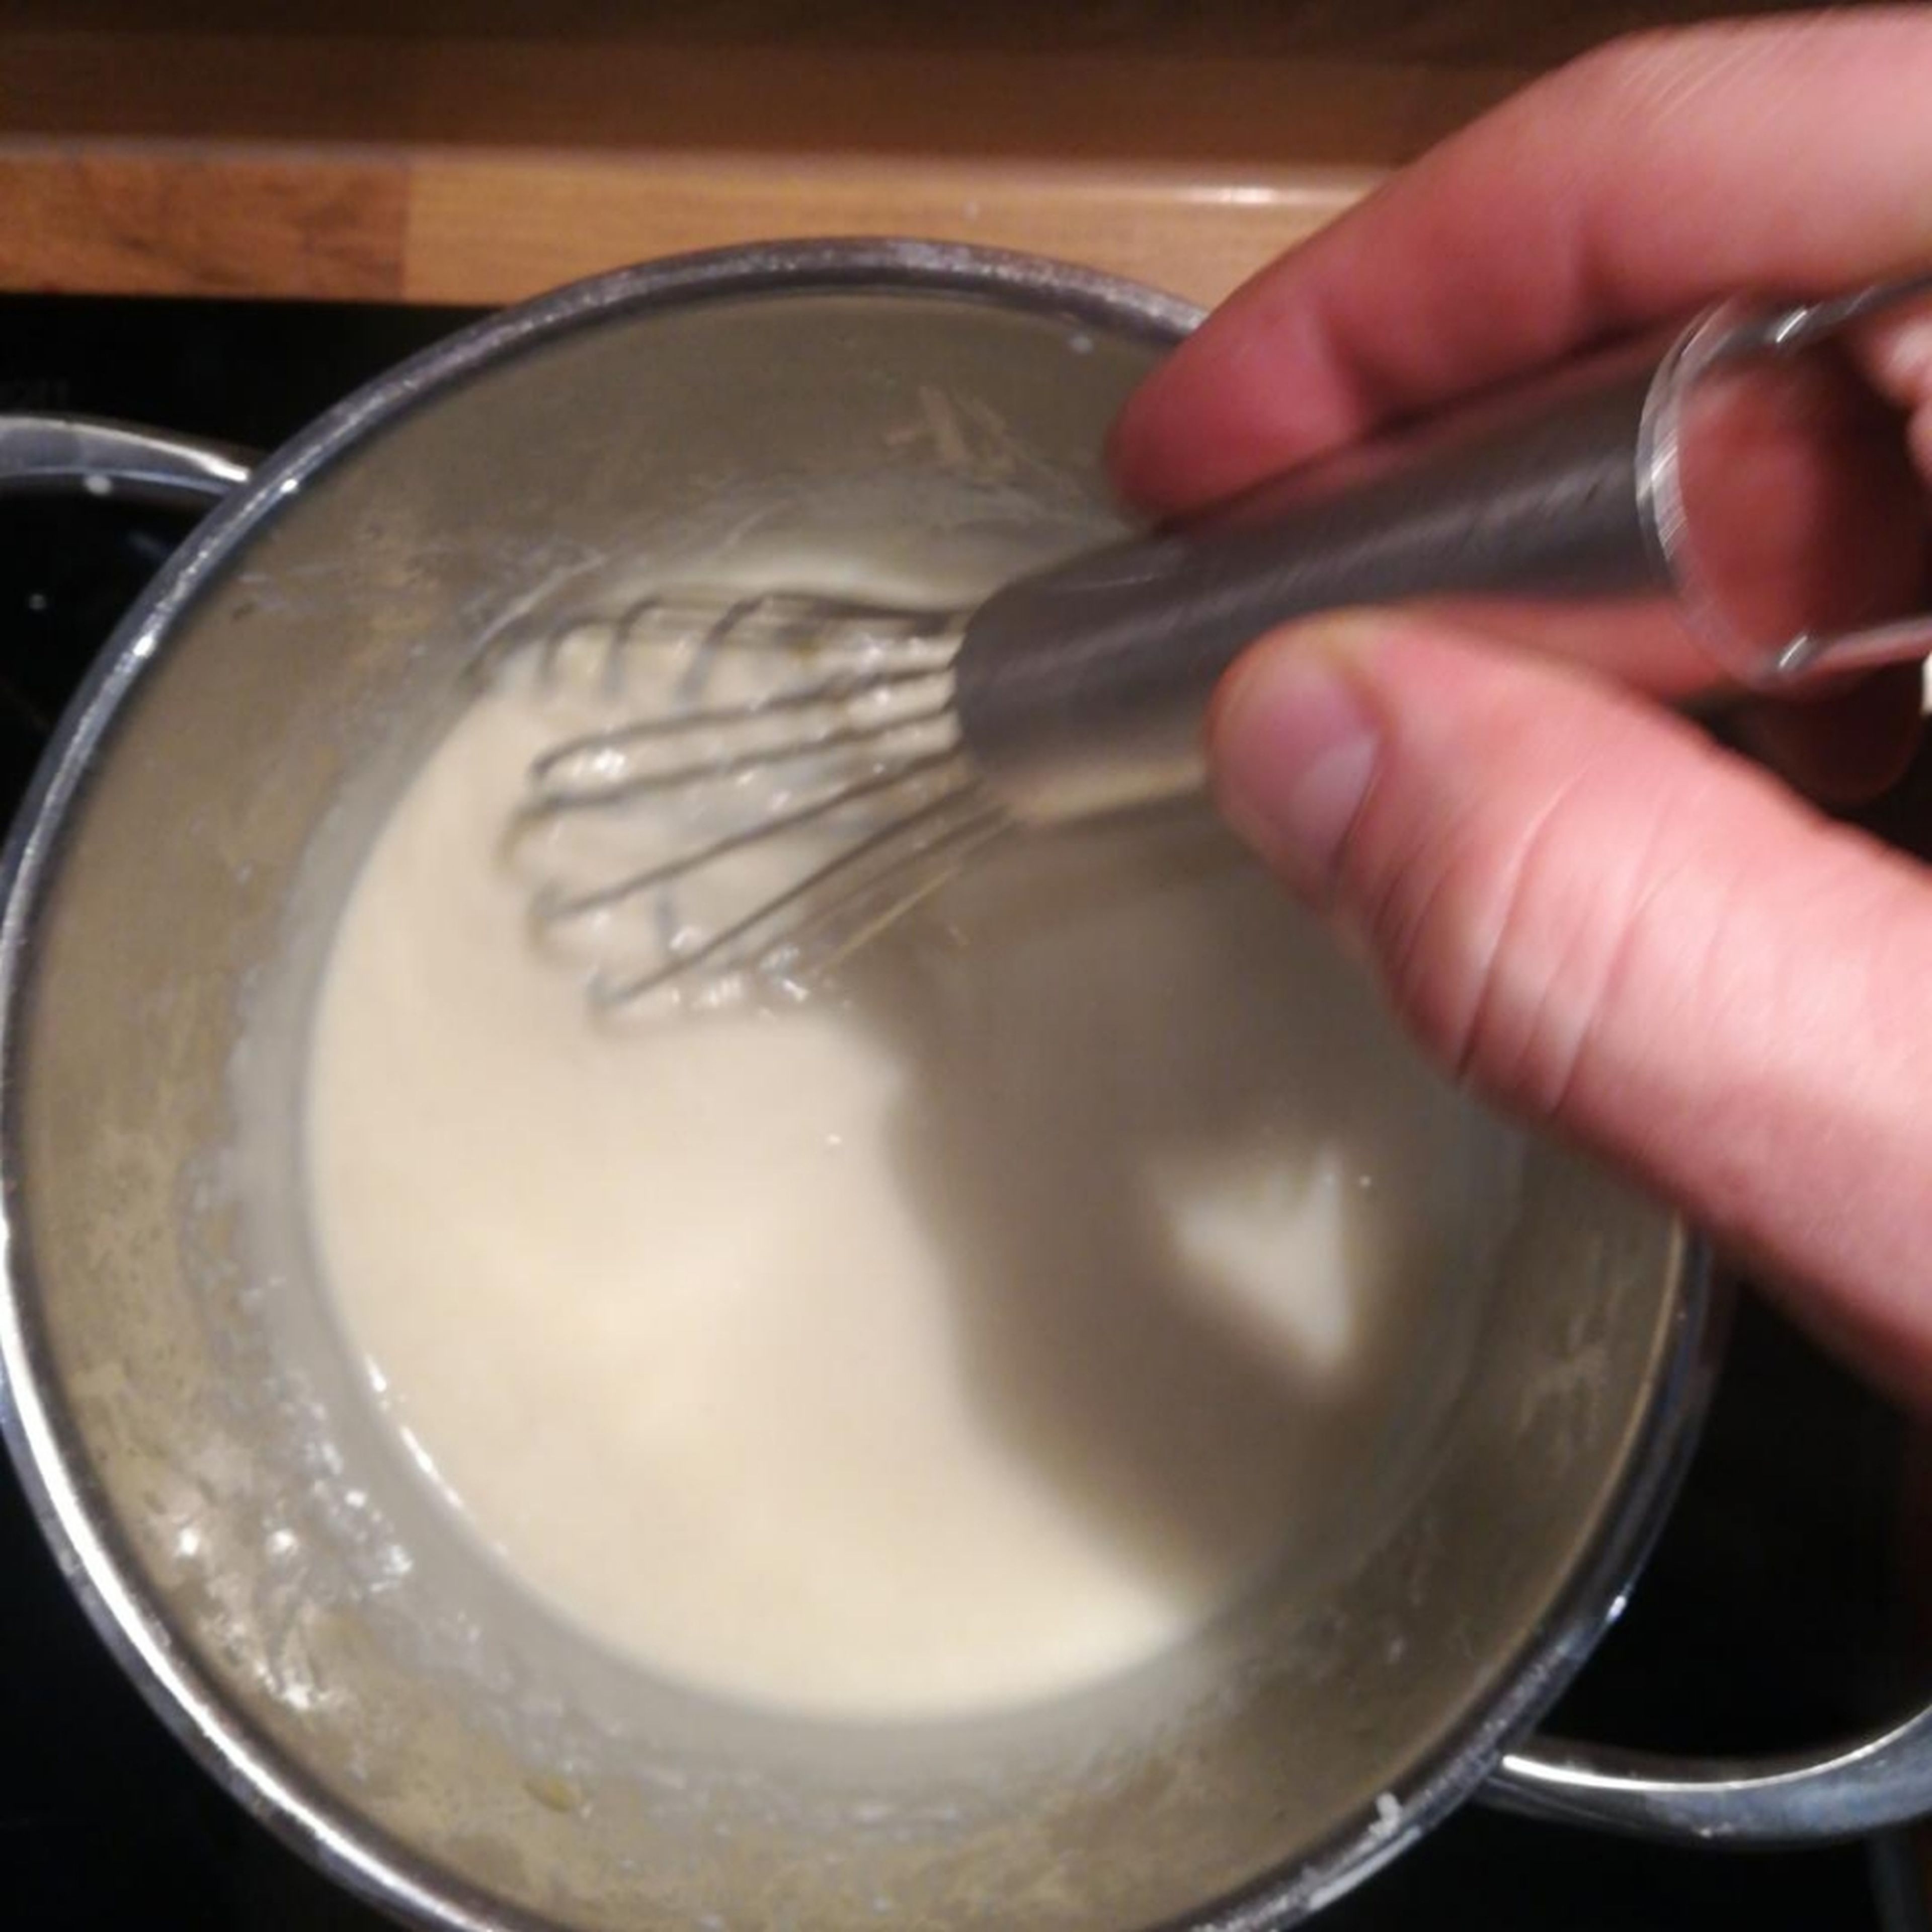 Die Butter zum schmelzen bringen, 1El Mehl hinzu geben und zum aufkochen bingen. Danach unter rühren mit dem Schneebesen Milch hinzugeben bis es sämig ist und mit Salz/Muskat abschmecken.